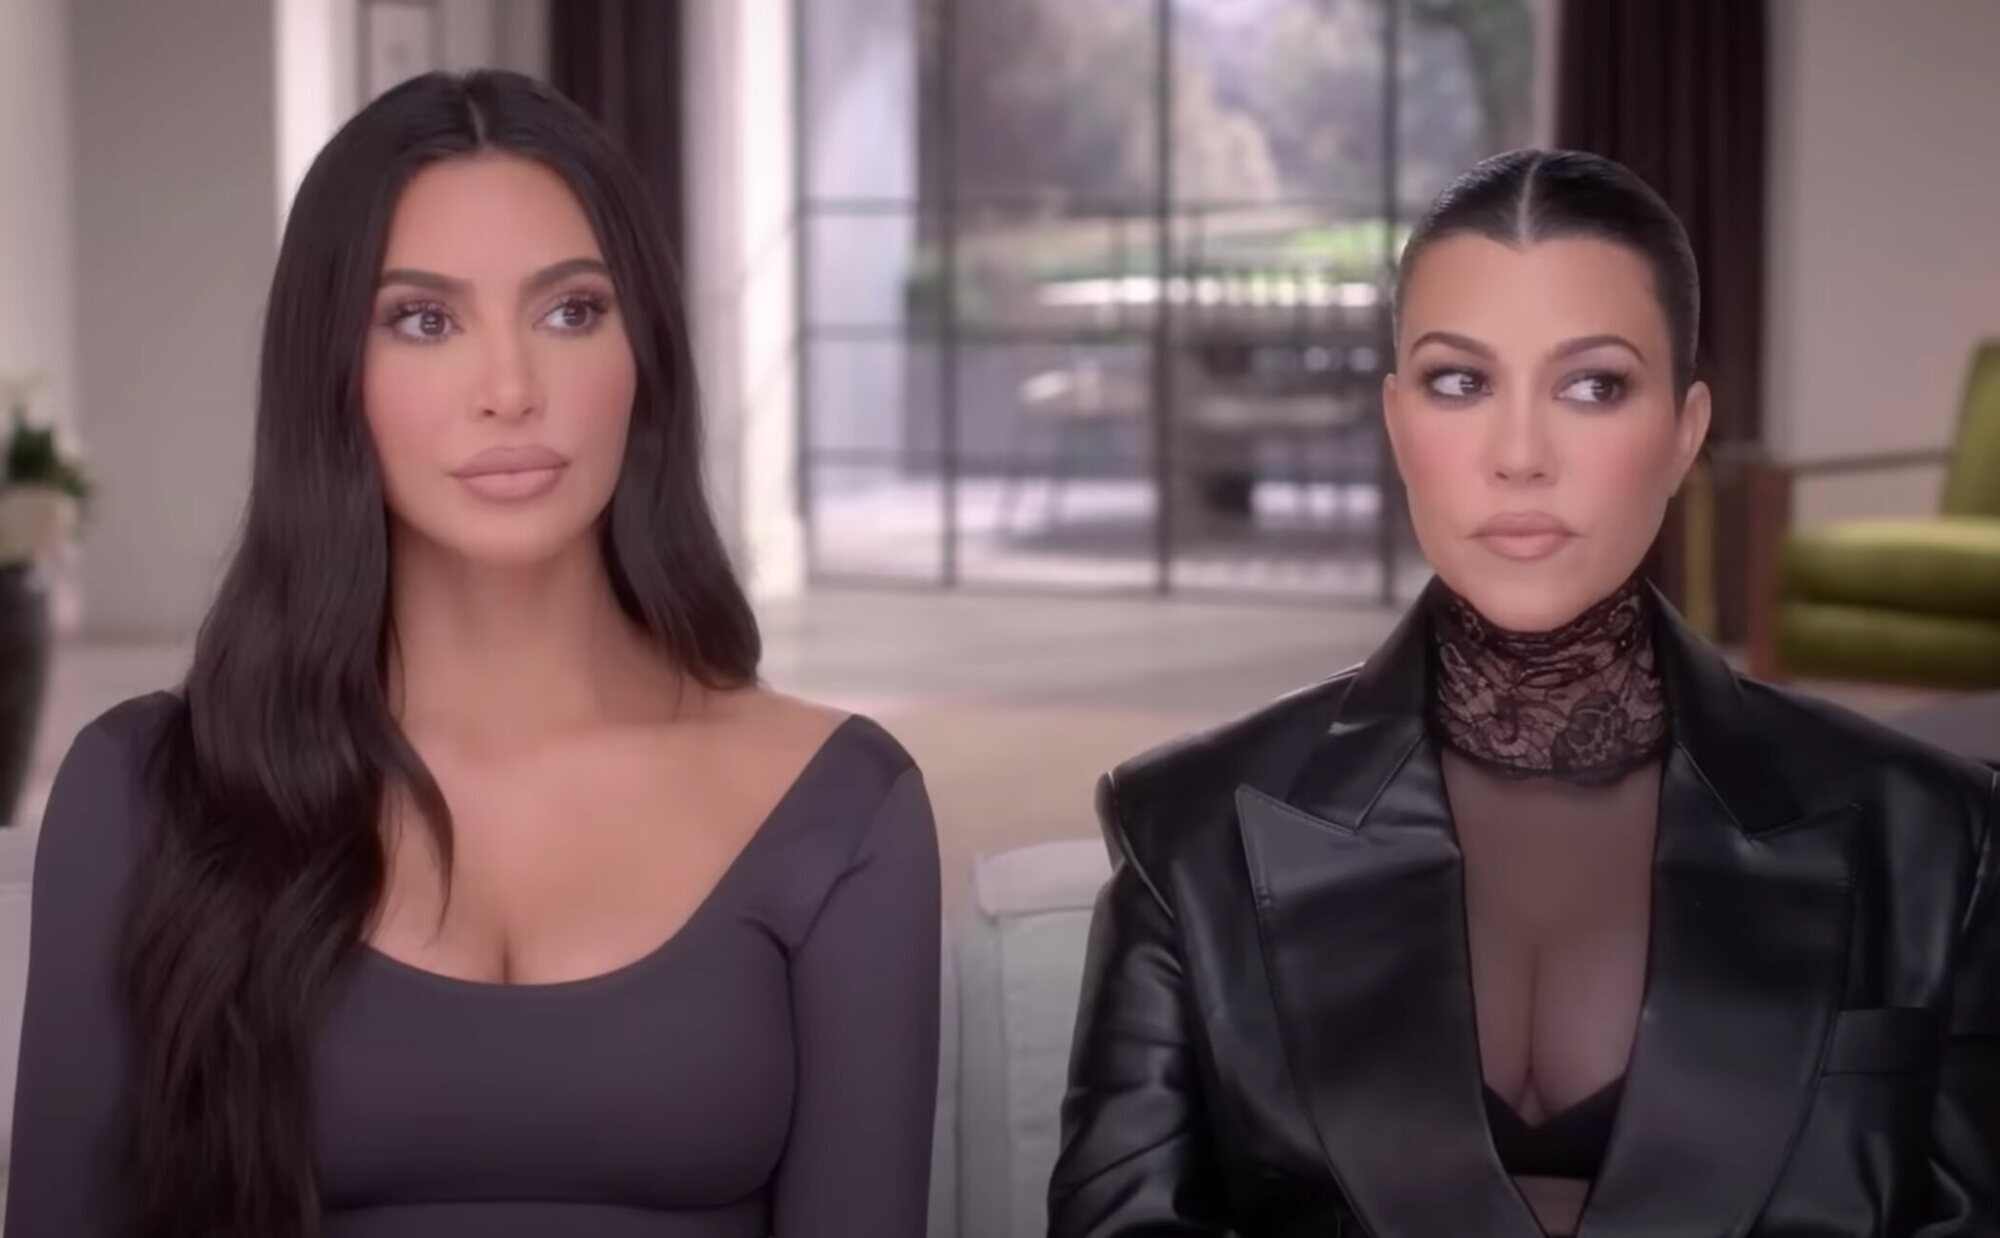 Kourtney Kardashian expone a sus hermanas por tener un chat para hablar mal de ella: "Kim nos ha tirado a los leones"